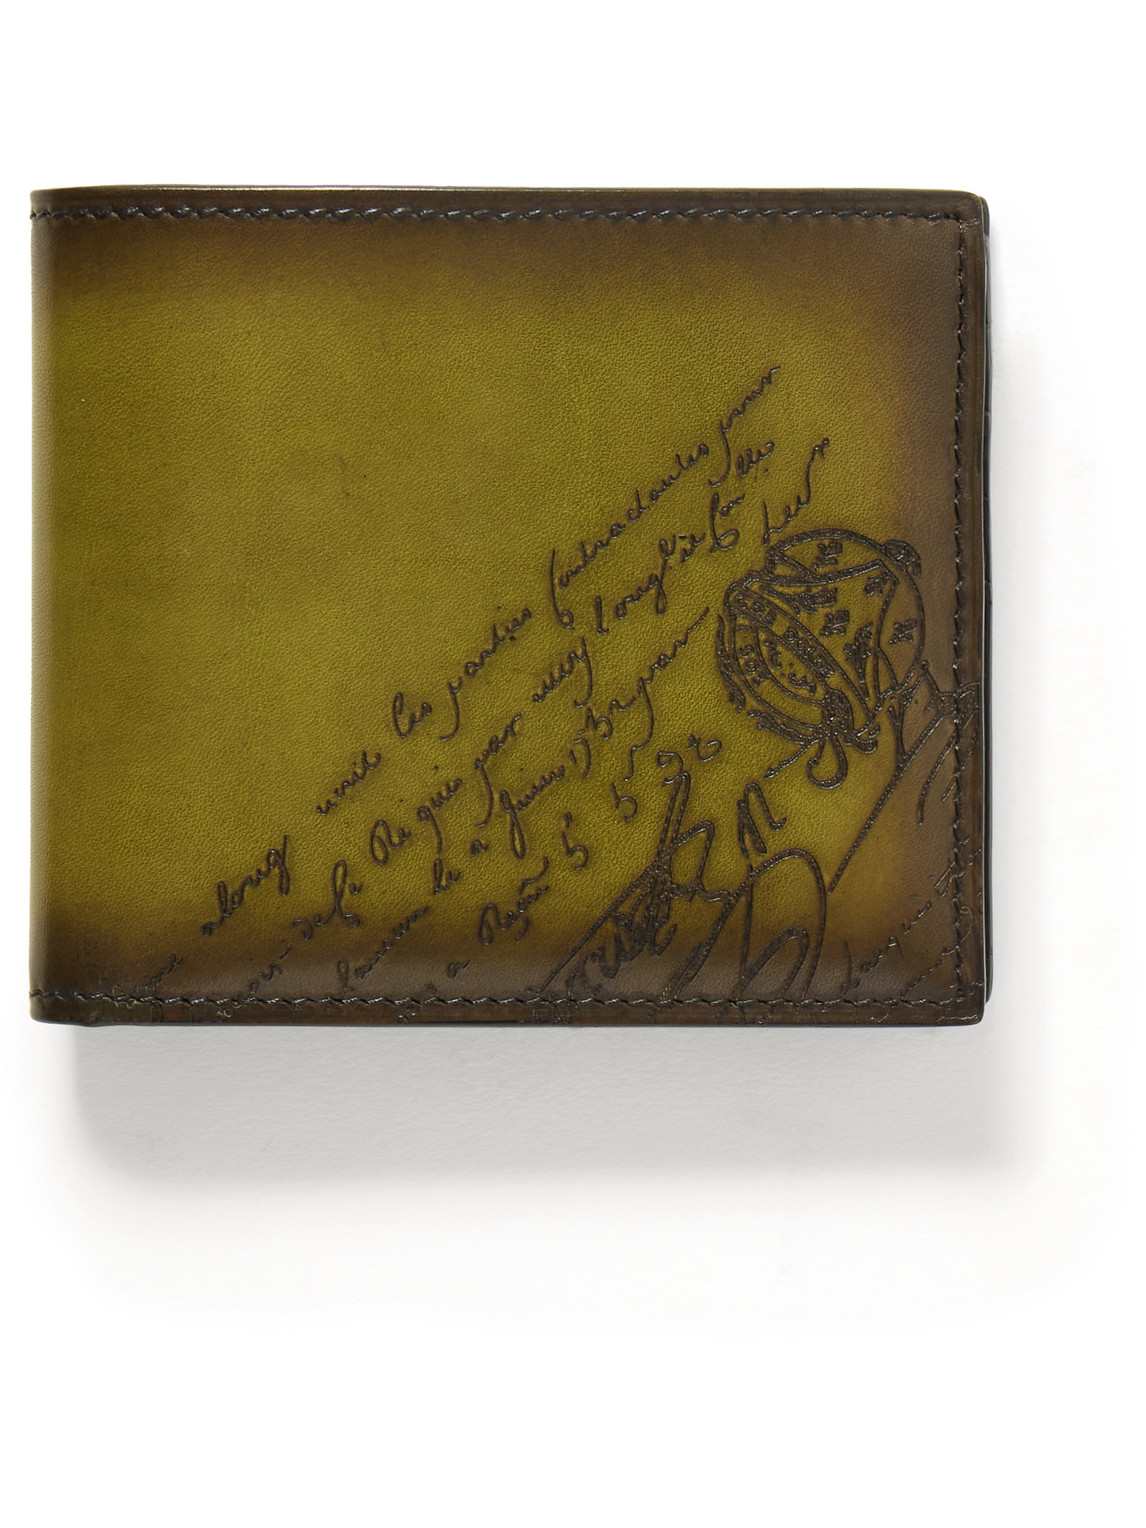 Makore Neo Scritto Venezia Leather Billfold Wallet